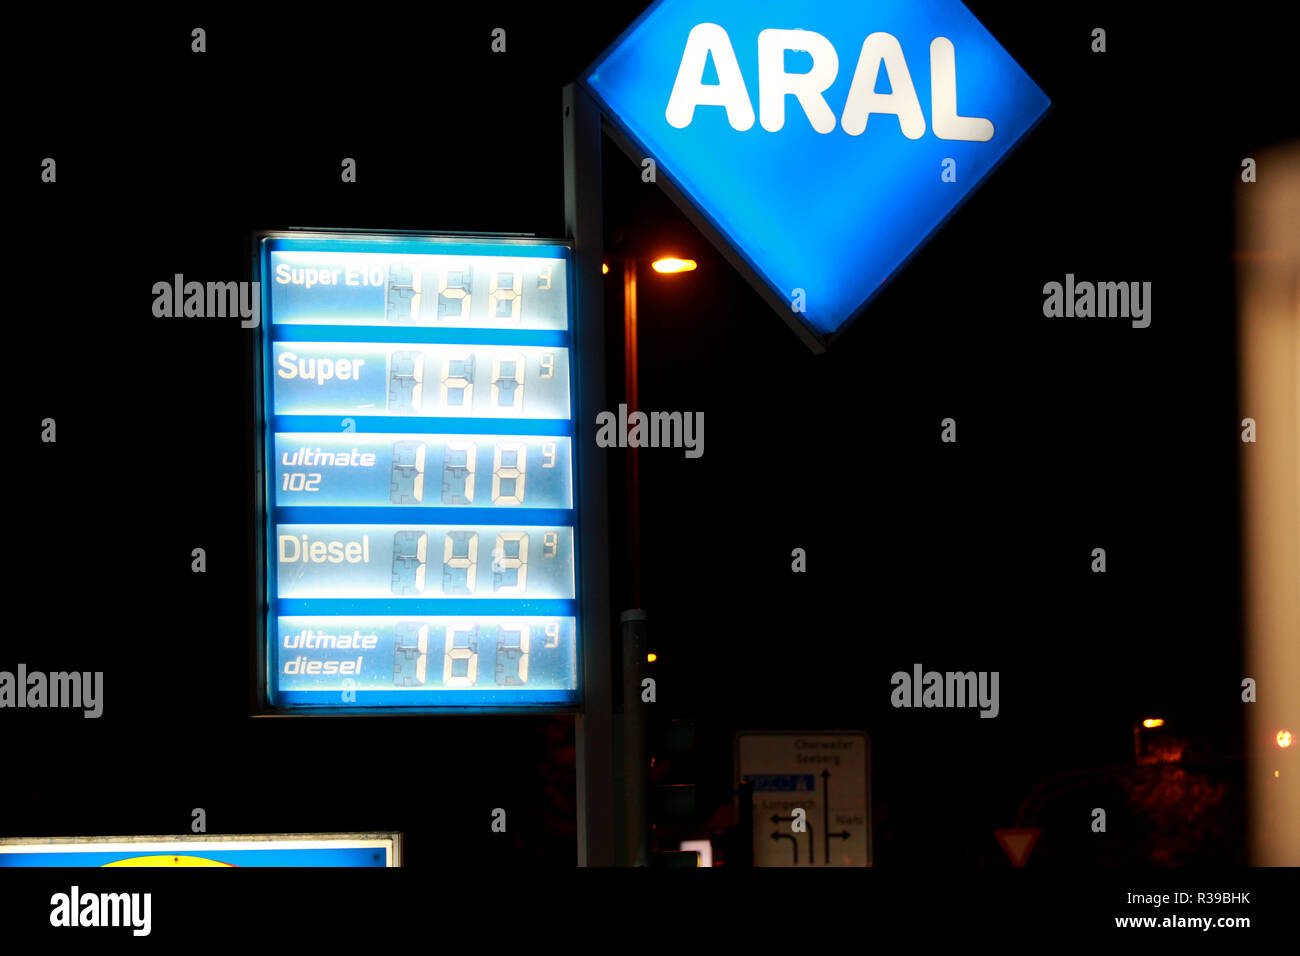 Estación de gasolina ARAL precio signo es visto en Colonia, Alemania. Precios de combustible diesel están aumentando casi tan alta como super precios del combustible. Los precios de la gasolina siguen siendo elevados en Alemania después de alcanzar niveles récord recientemente. Foto de stock